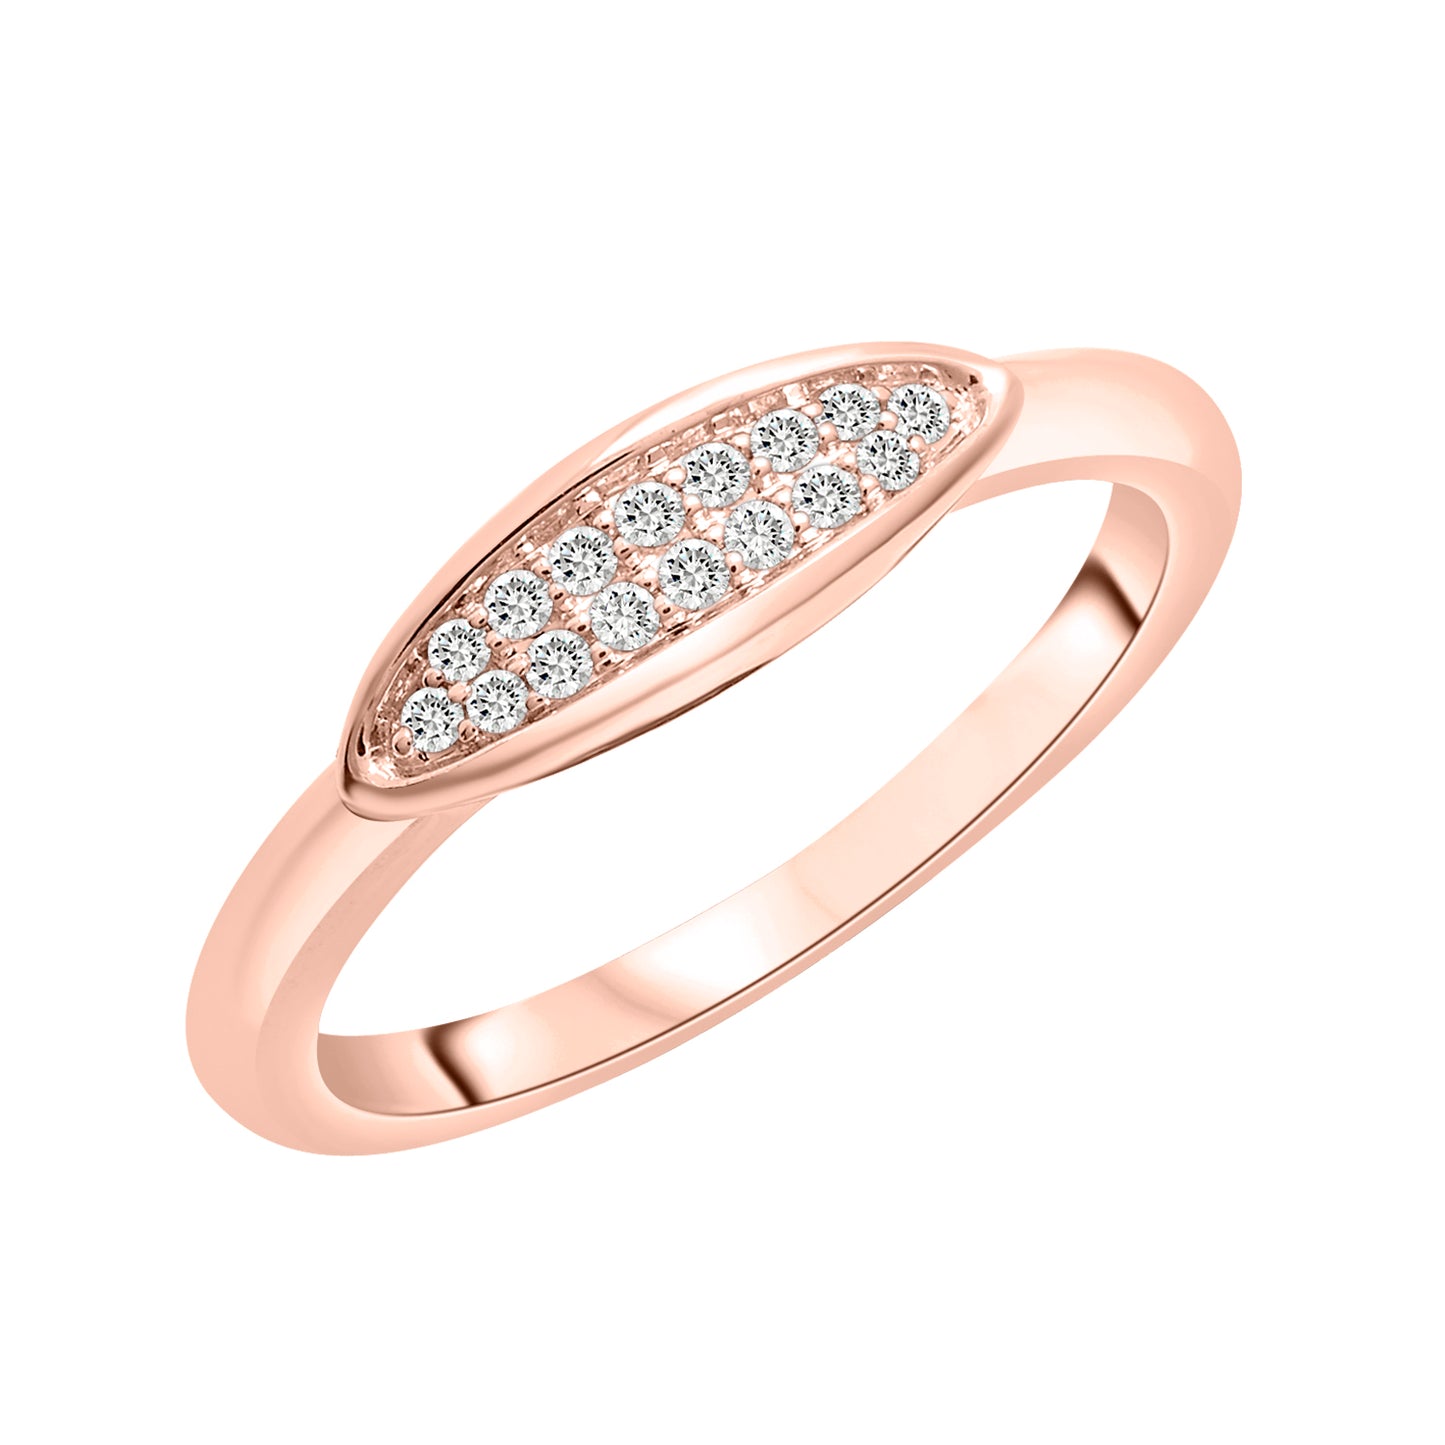 Ren Diamond Ring in Rose Gold